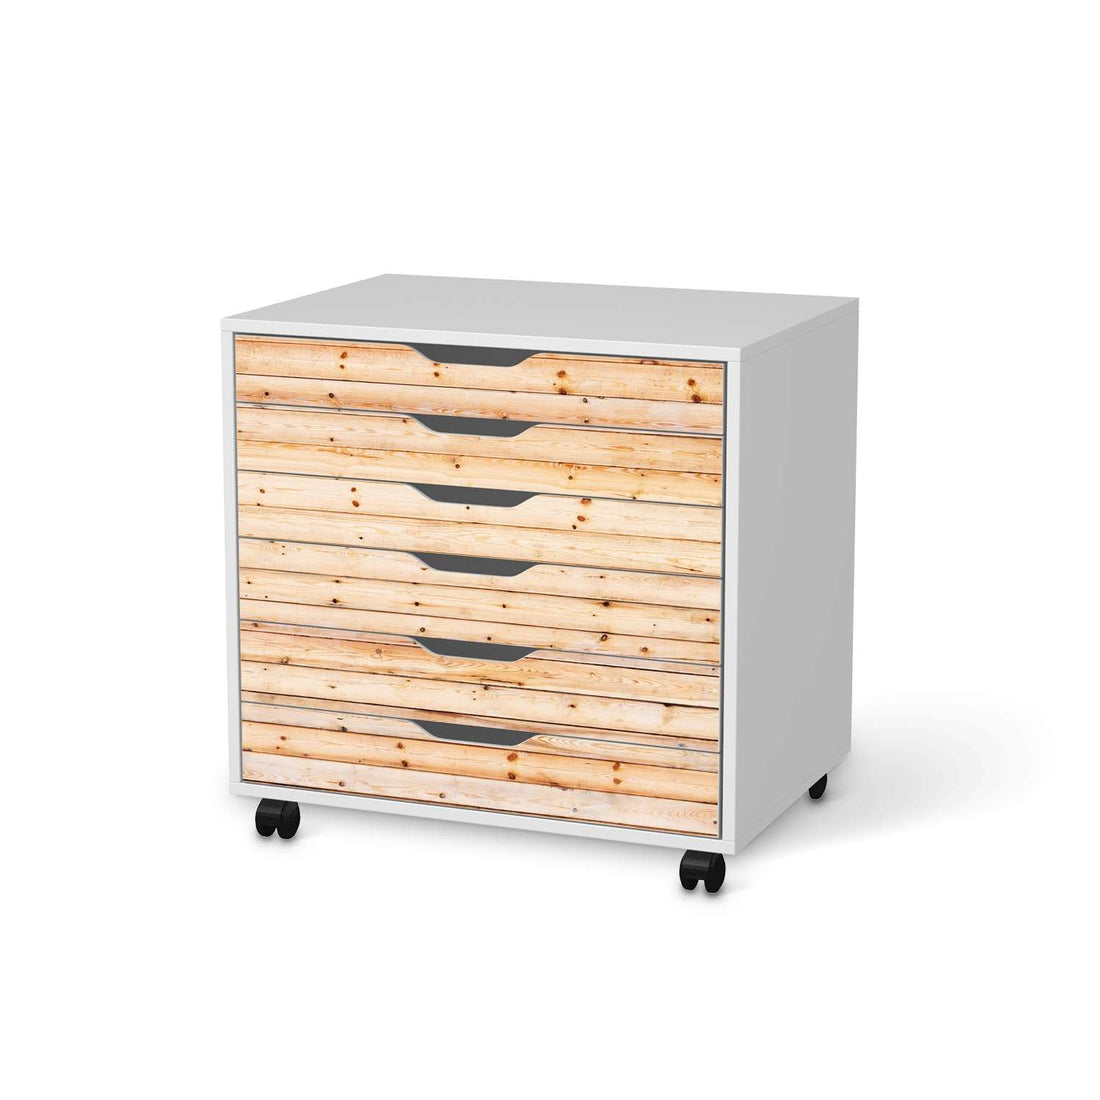 Möbelfolie Bright Planks - IKEA Alex Rollcontainer 6 Schubladen - weiss